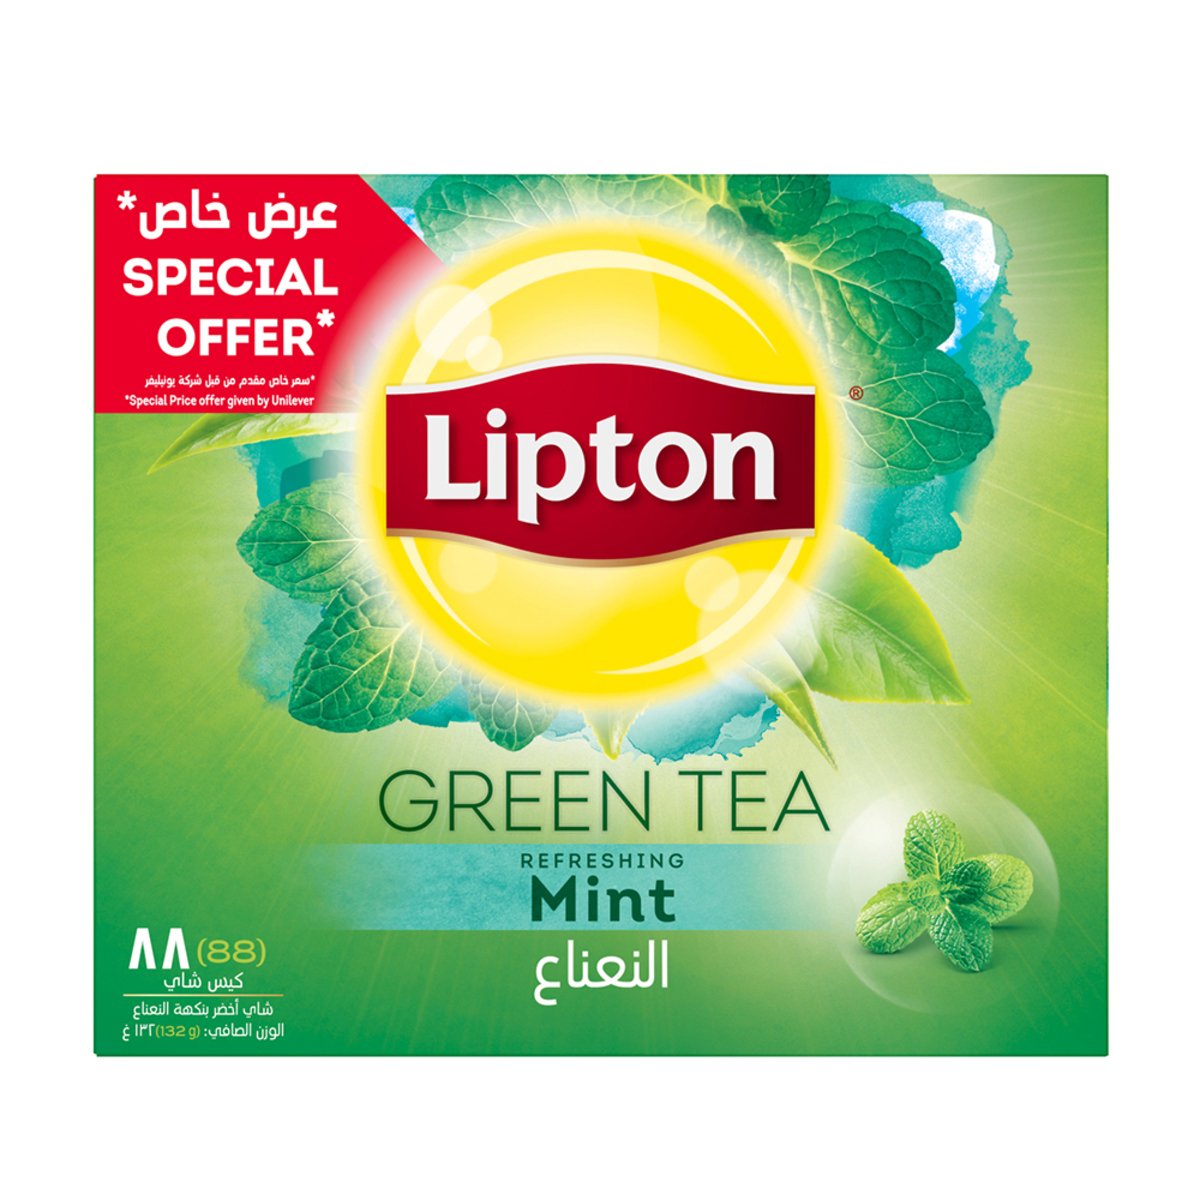 ليبتون شاي أخضر بالنعناع المنعش عبوة اقتصادية 88 كيس شاي